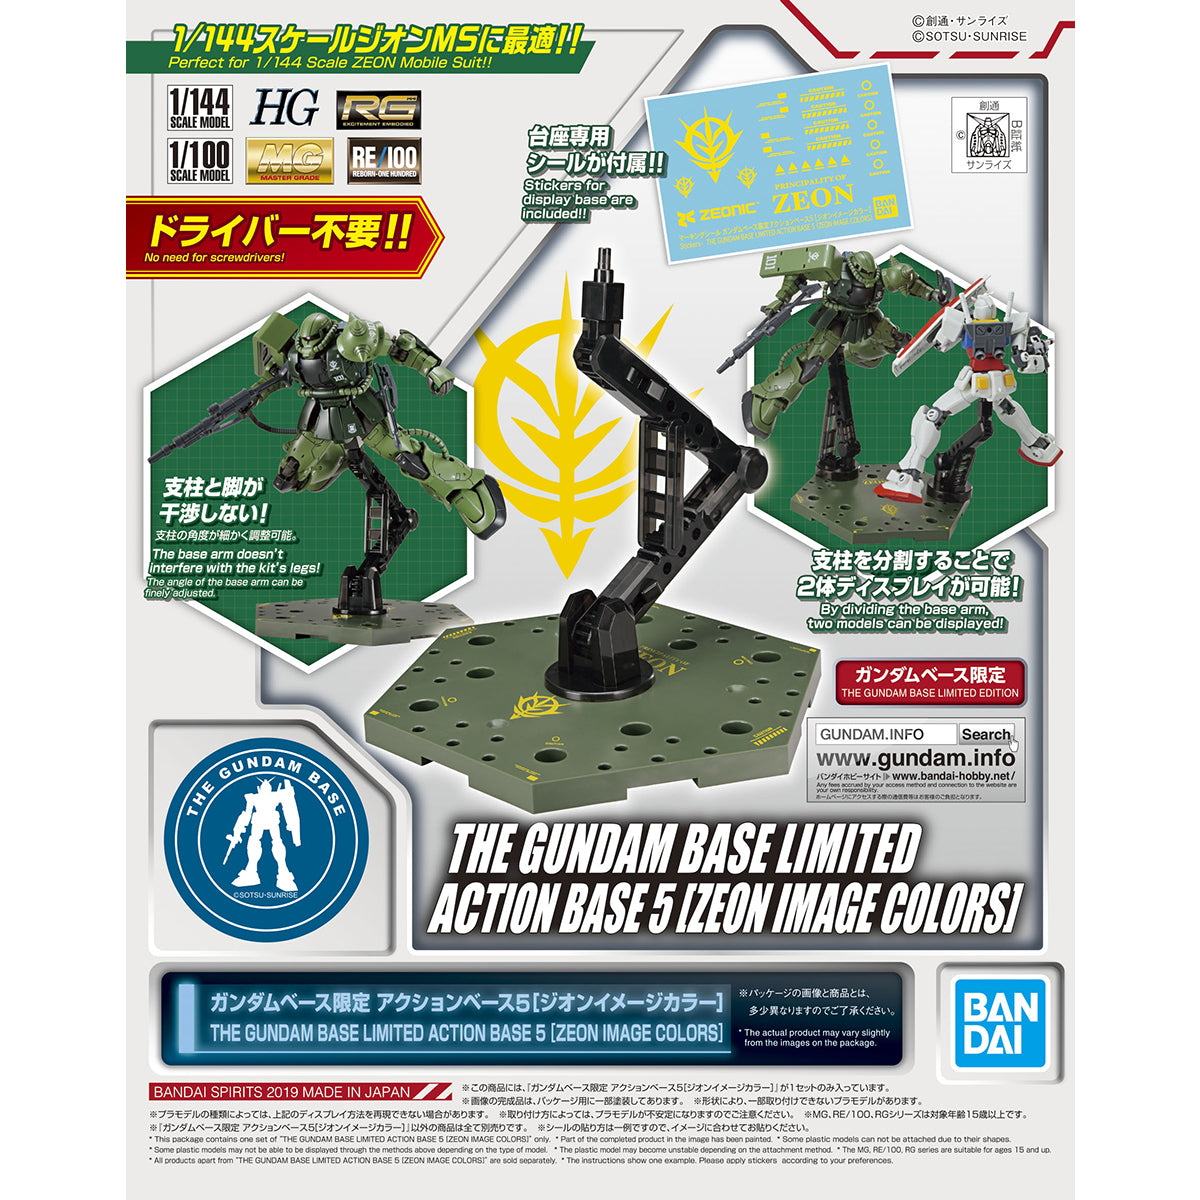 Gundam Base Limited Action Base 5 [Zeon Image Colors]